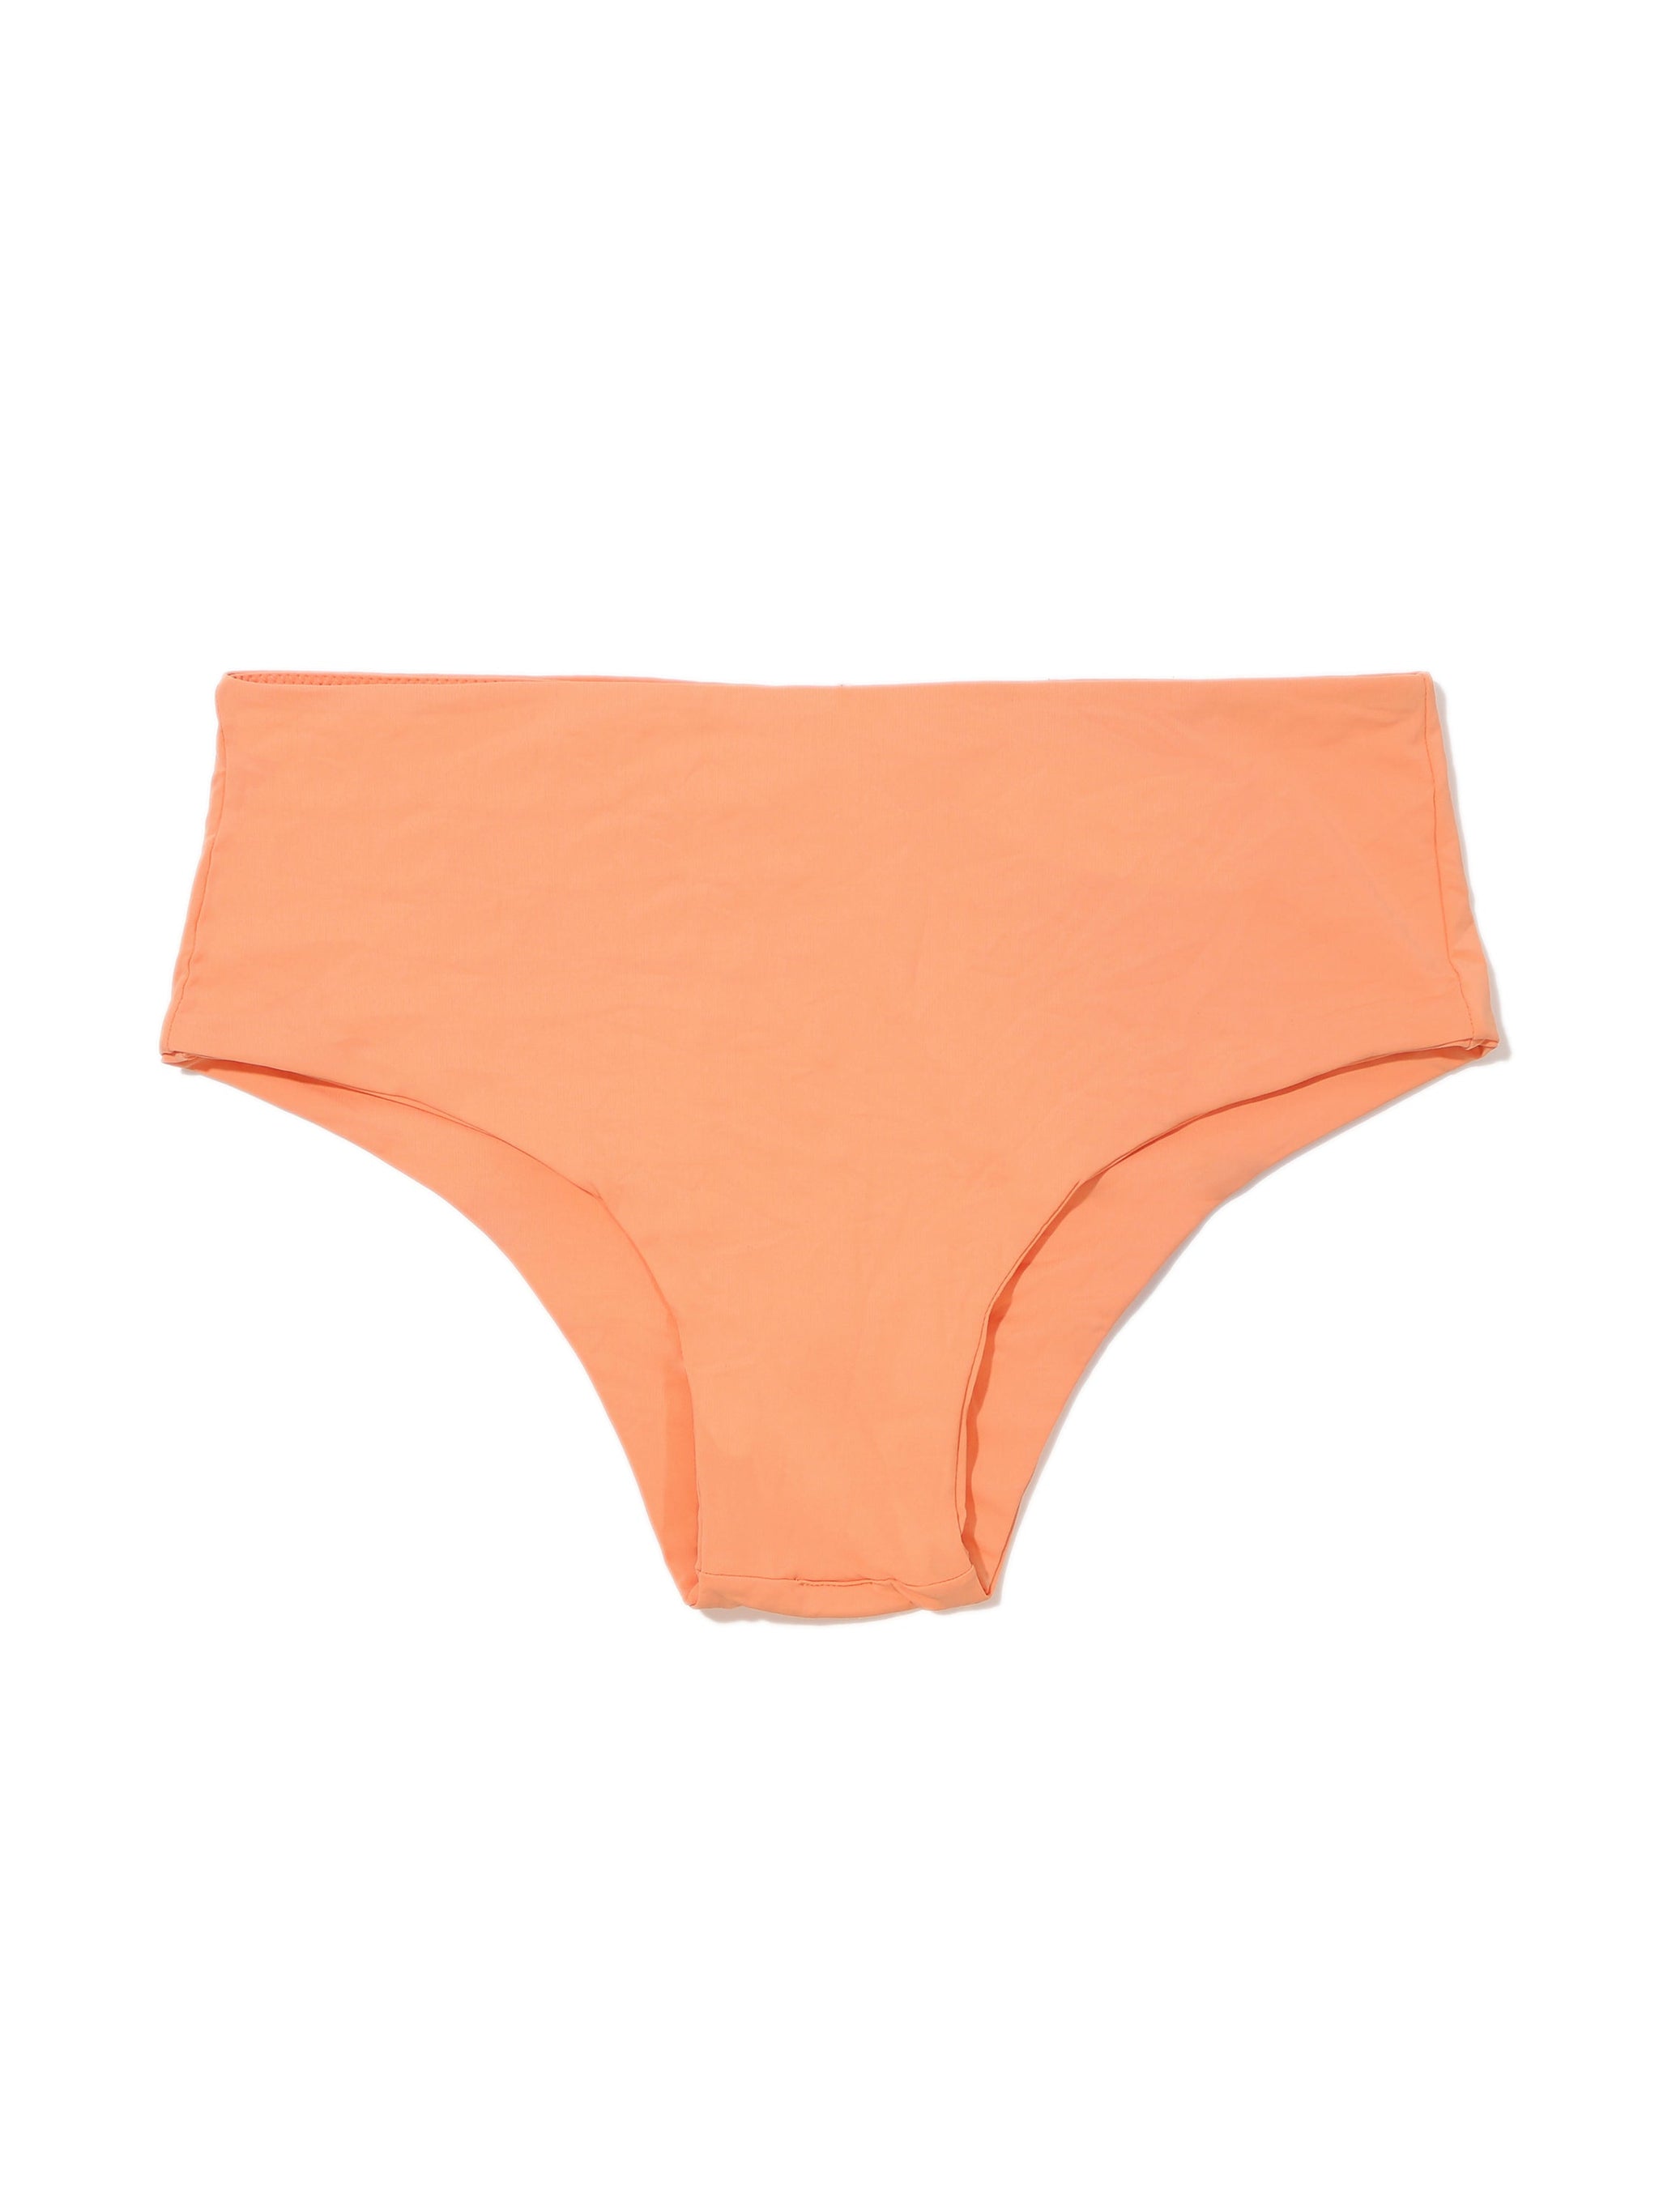 Boyshort Swimsuit Bottom Florence Orange